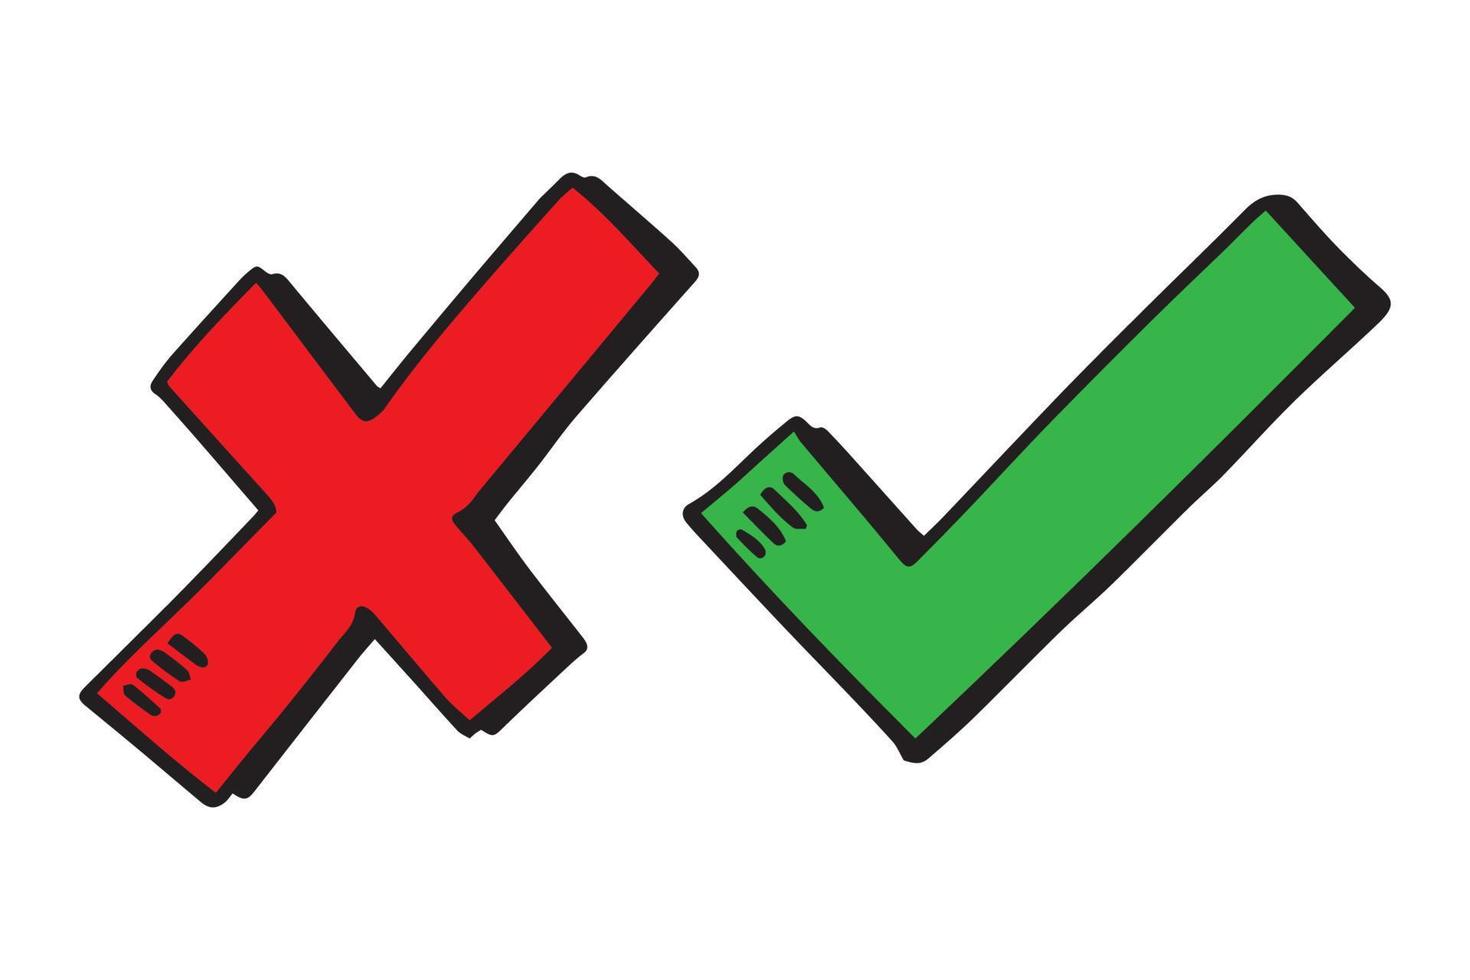 vinkje en kruisborstel. ok groen vinkje en rood x pictogram, geïsoleerd op een witte achtergrond. symbool ja en nee knoppen voor stemmen, besluit, web. goed en fout. vector